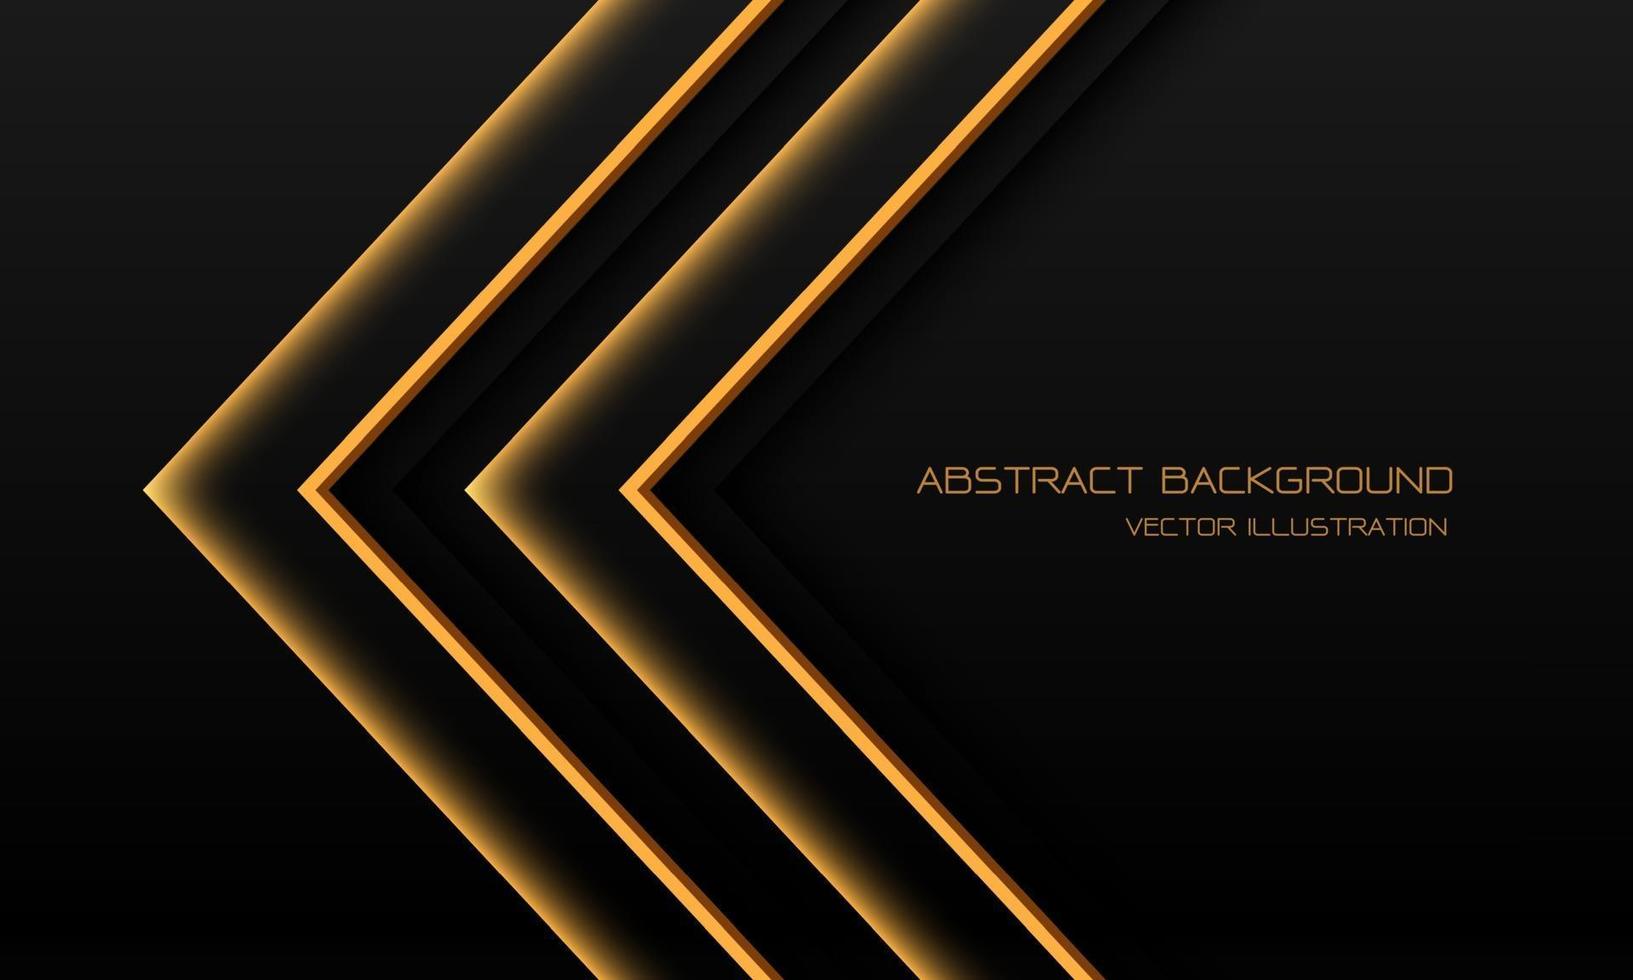 Dirección de flecha de neón de luz amarilla abstracta en negro con diseño de espacio en blanco ilustración de vector de fondo de tecnología futurista moderna.